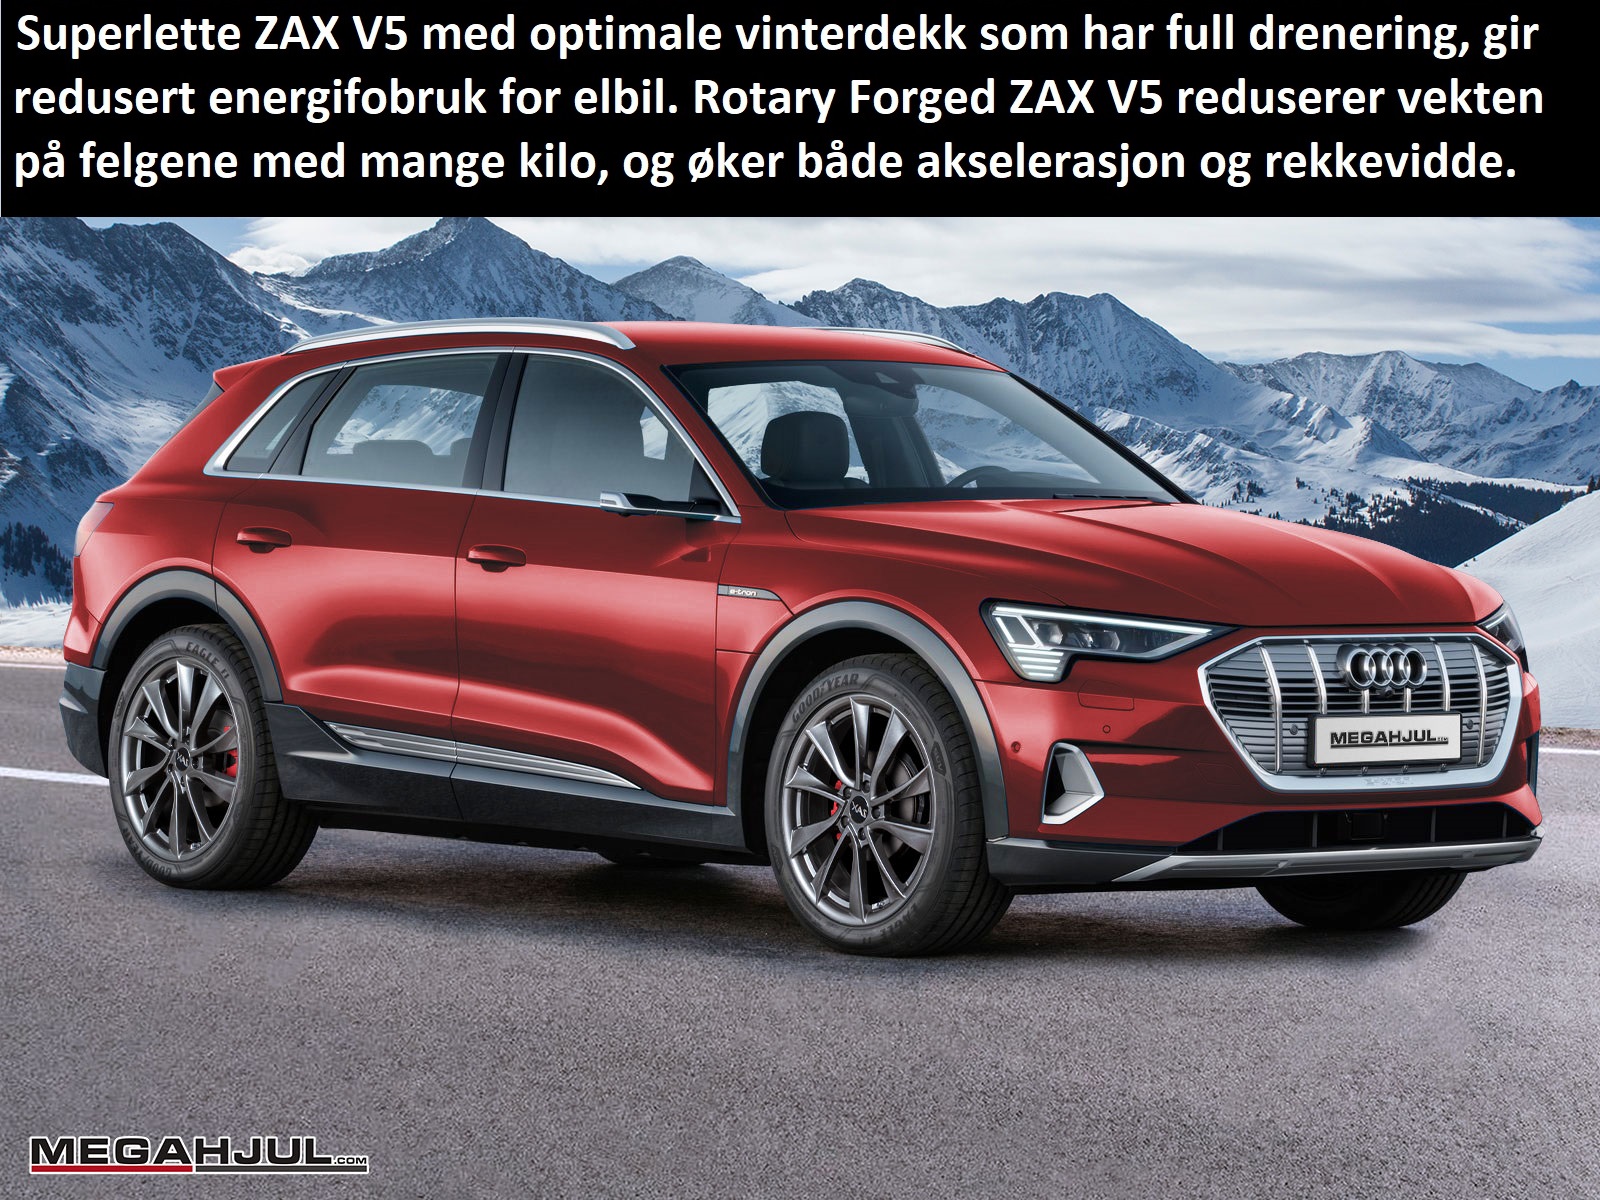 Audi e-tron med superlette ZAX V5 og vinterdekk med full drenering mot vannplaning